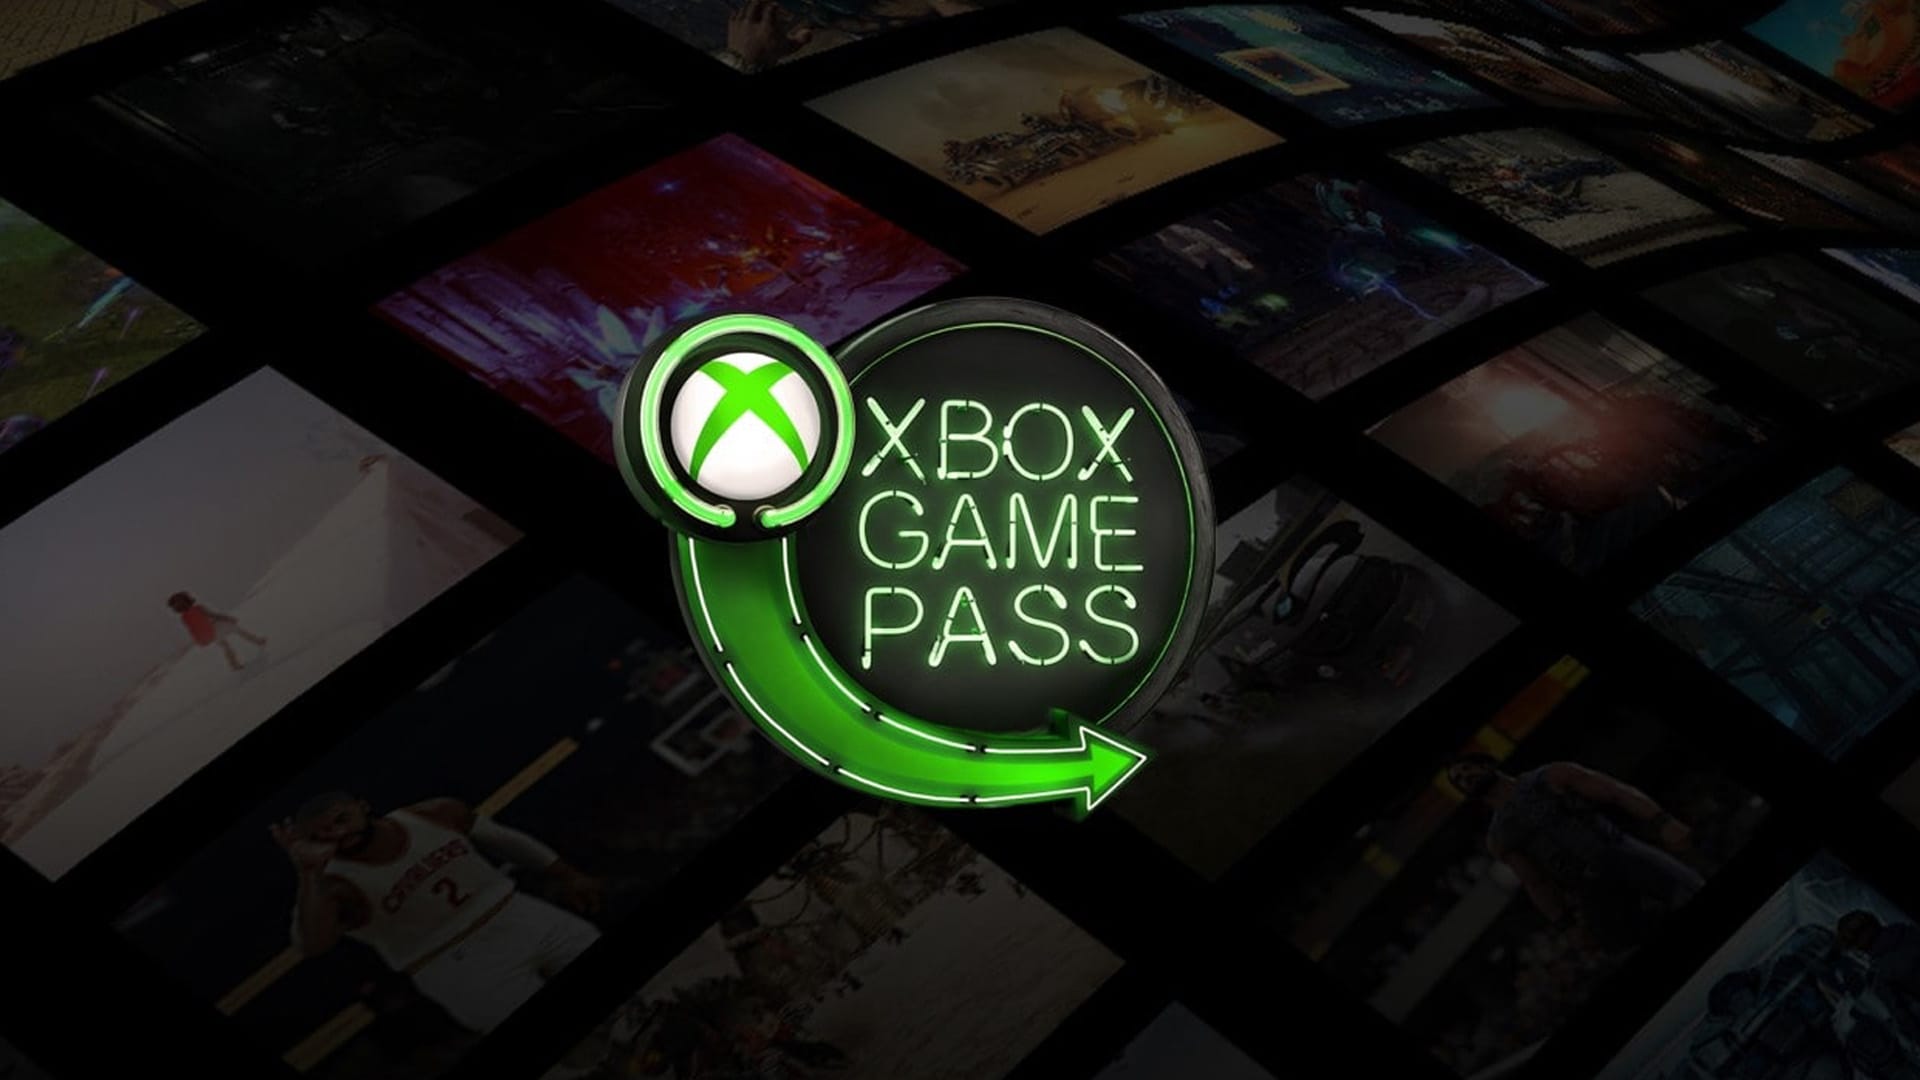 7 ألعاب هيتشالوا من خدمة Xbox Game Pass